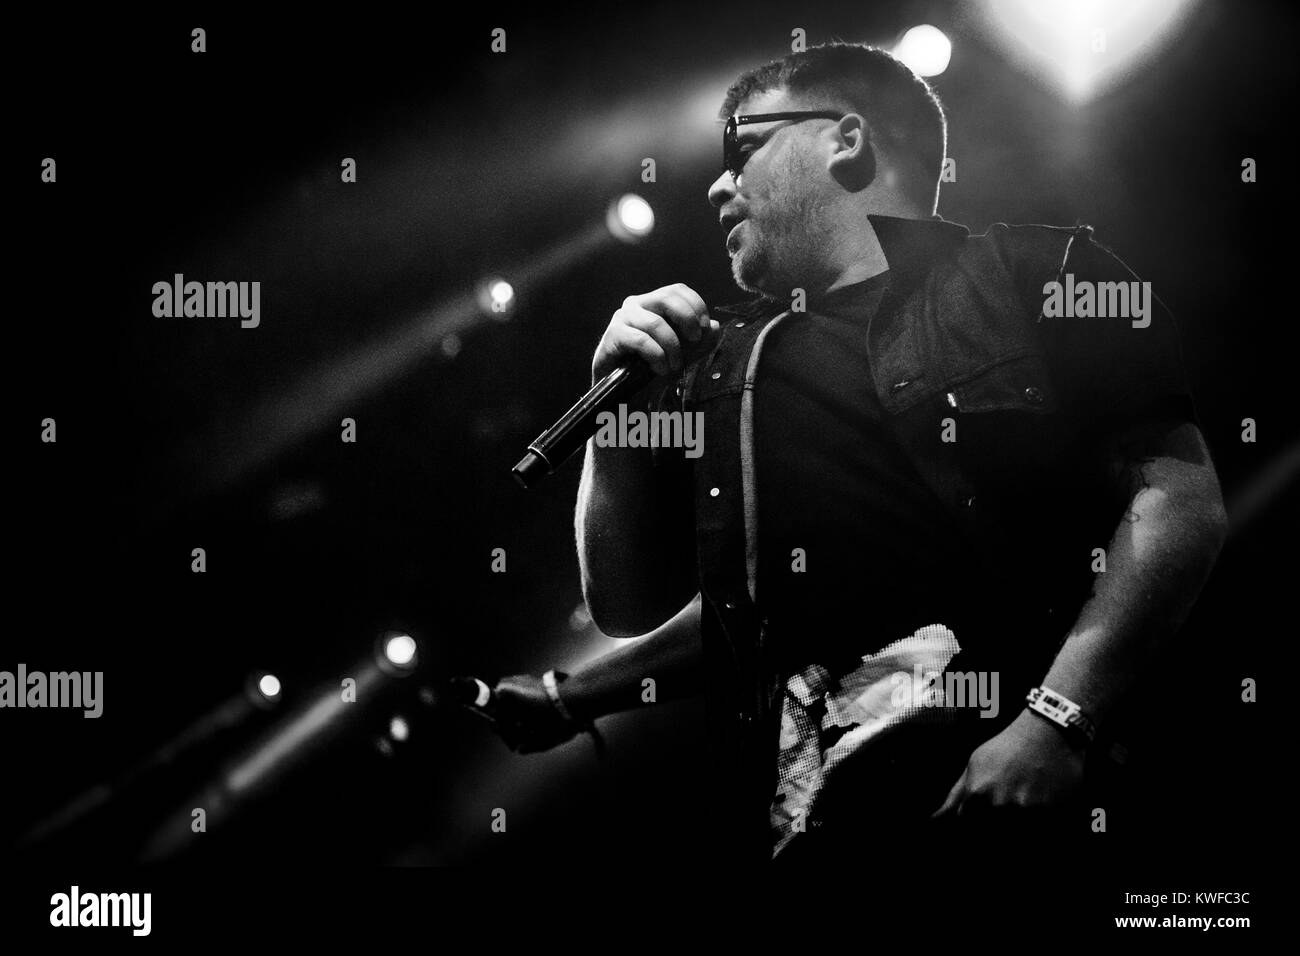 Le rap et hip-hop américain duo exécuter le rubis effectue un concert live à l'Arena Stade au Festival Roskilde 2015. Le duo composé des deux rappeurs, El-P (photo) et Killer Mike. Le Danemark, 03/07 2015. Banque D'Images